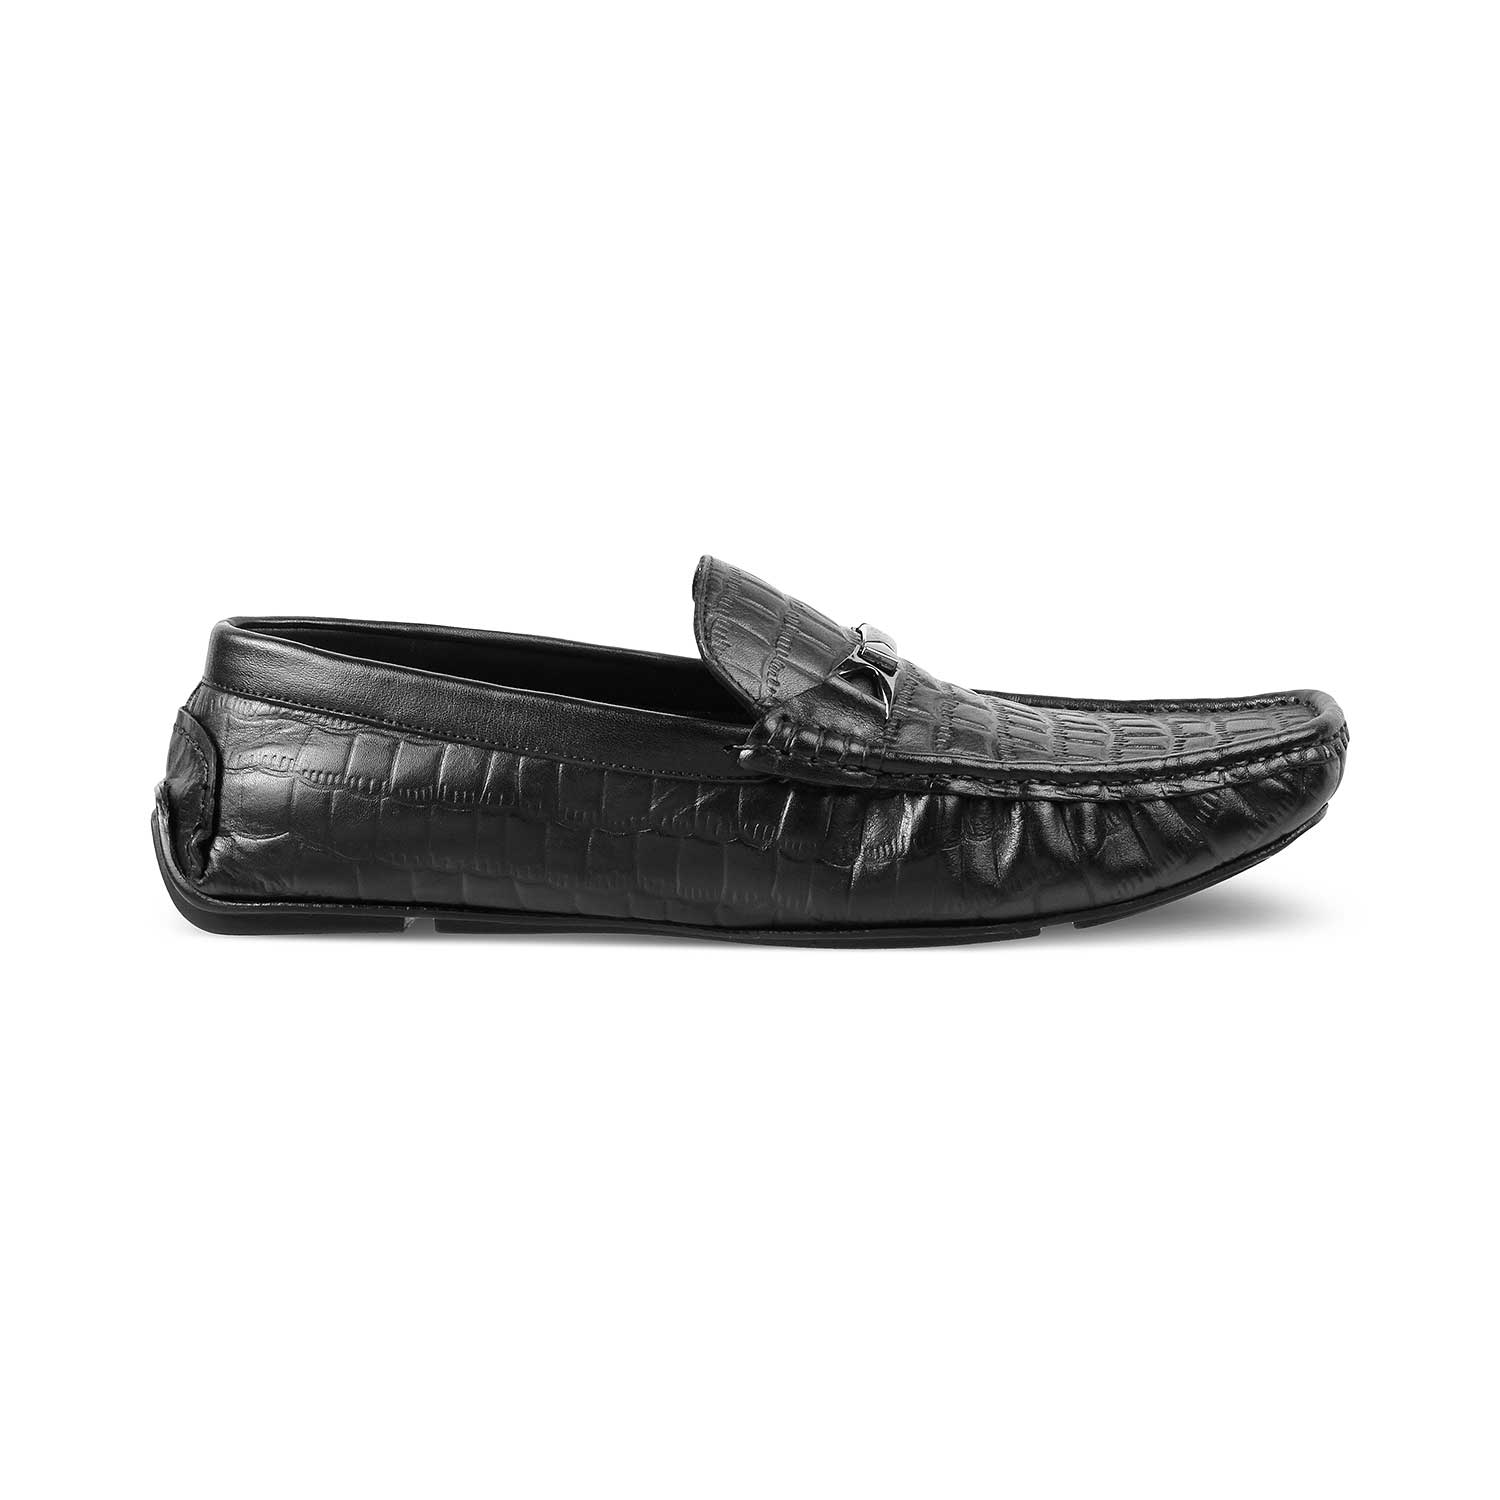 Hummer Black Men's Leather Driving Loafers Online at Tresmode.com